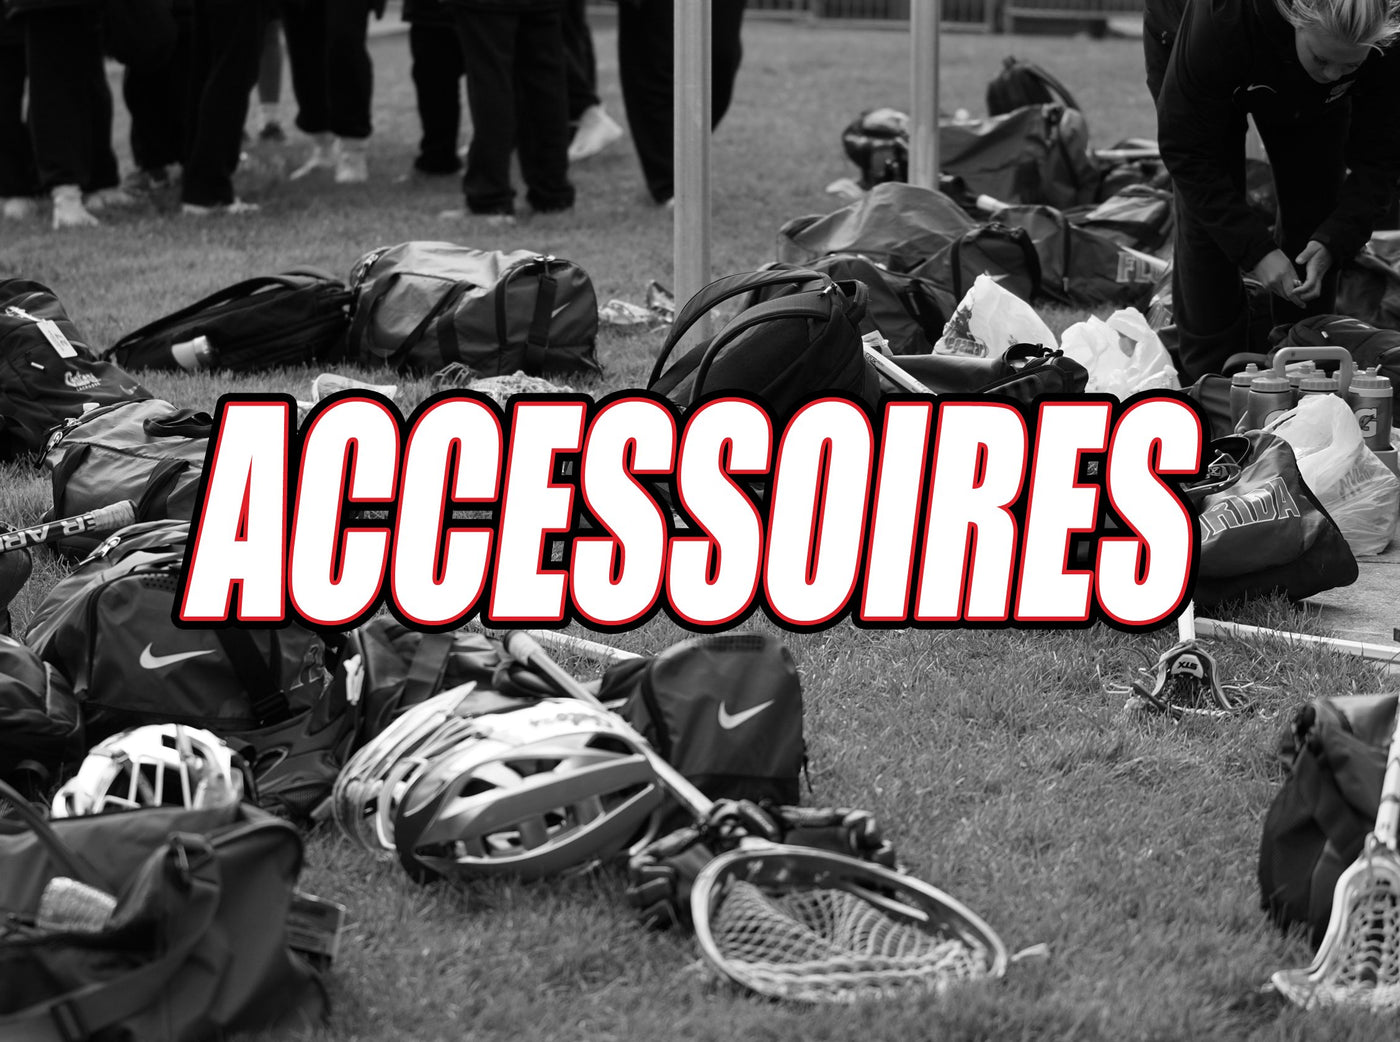 Lacrosse Accessoires